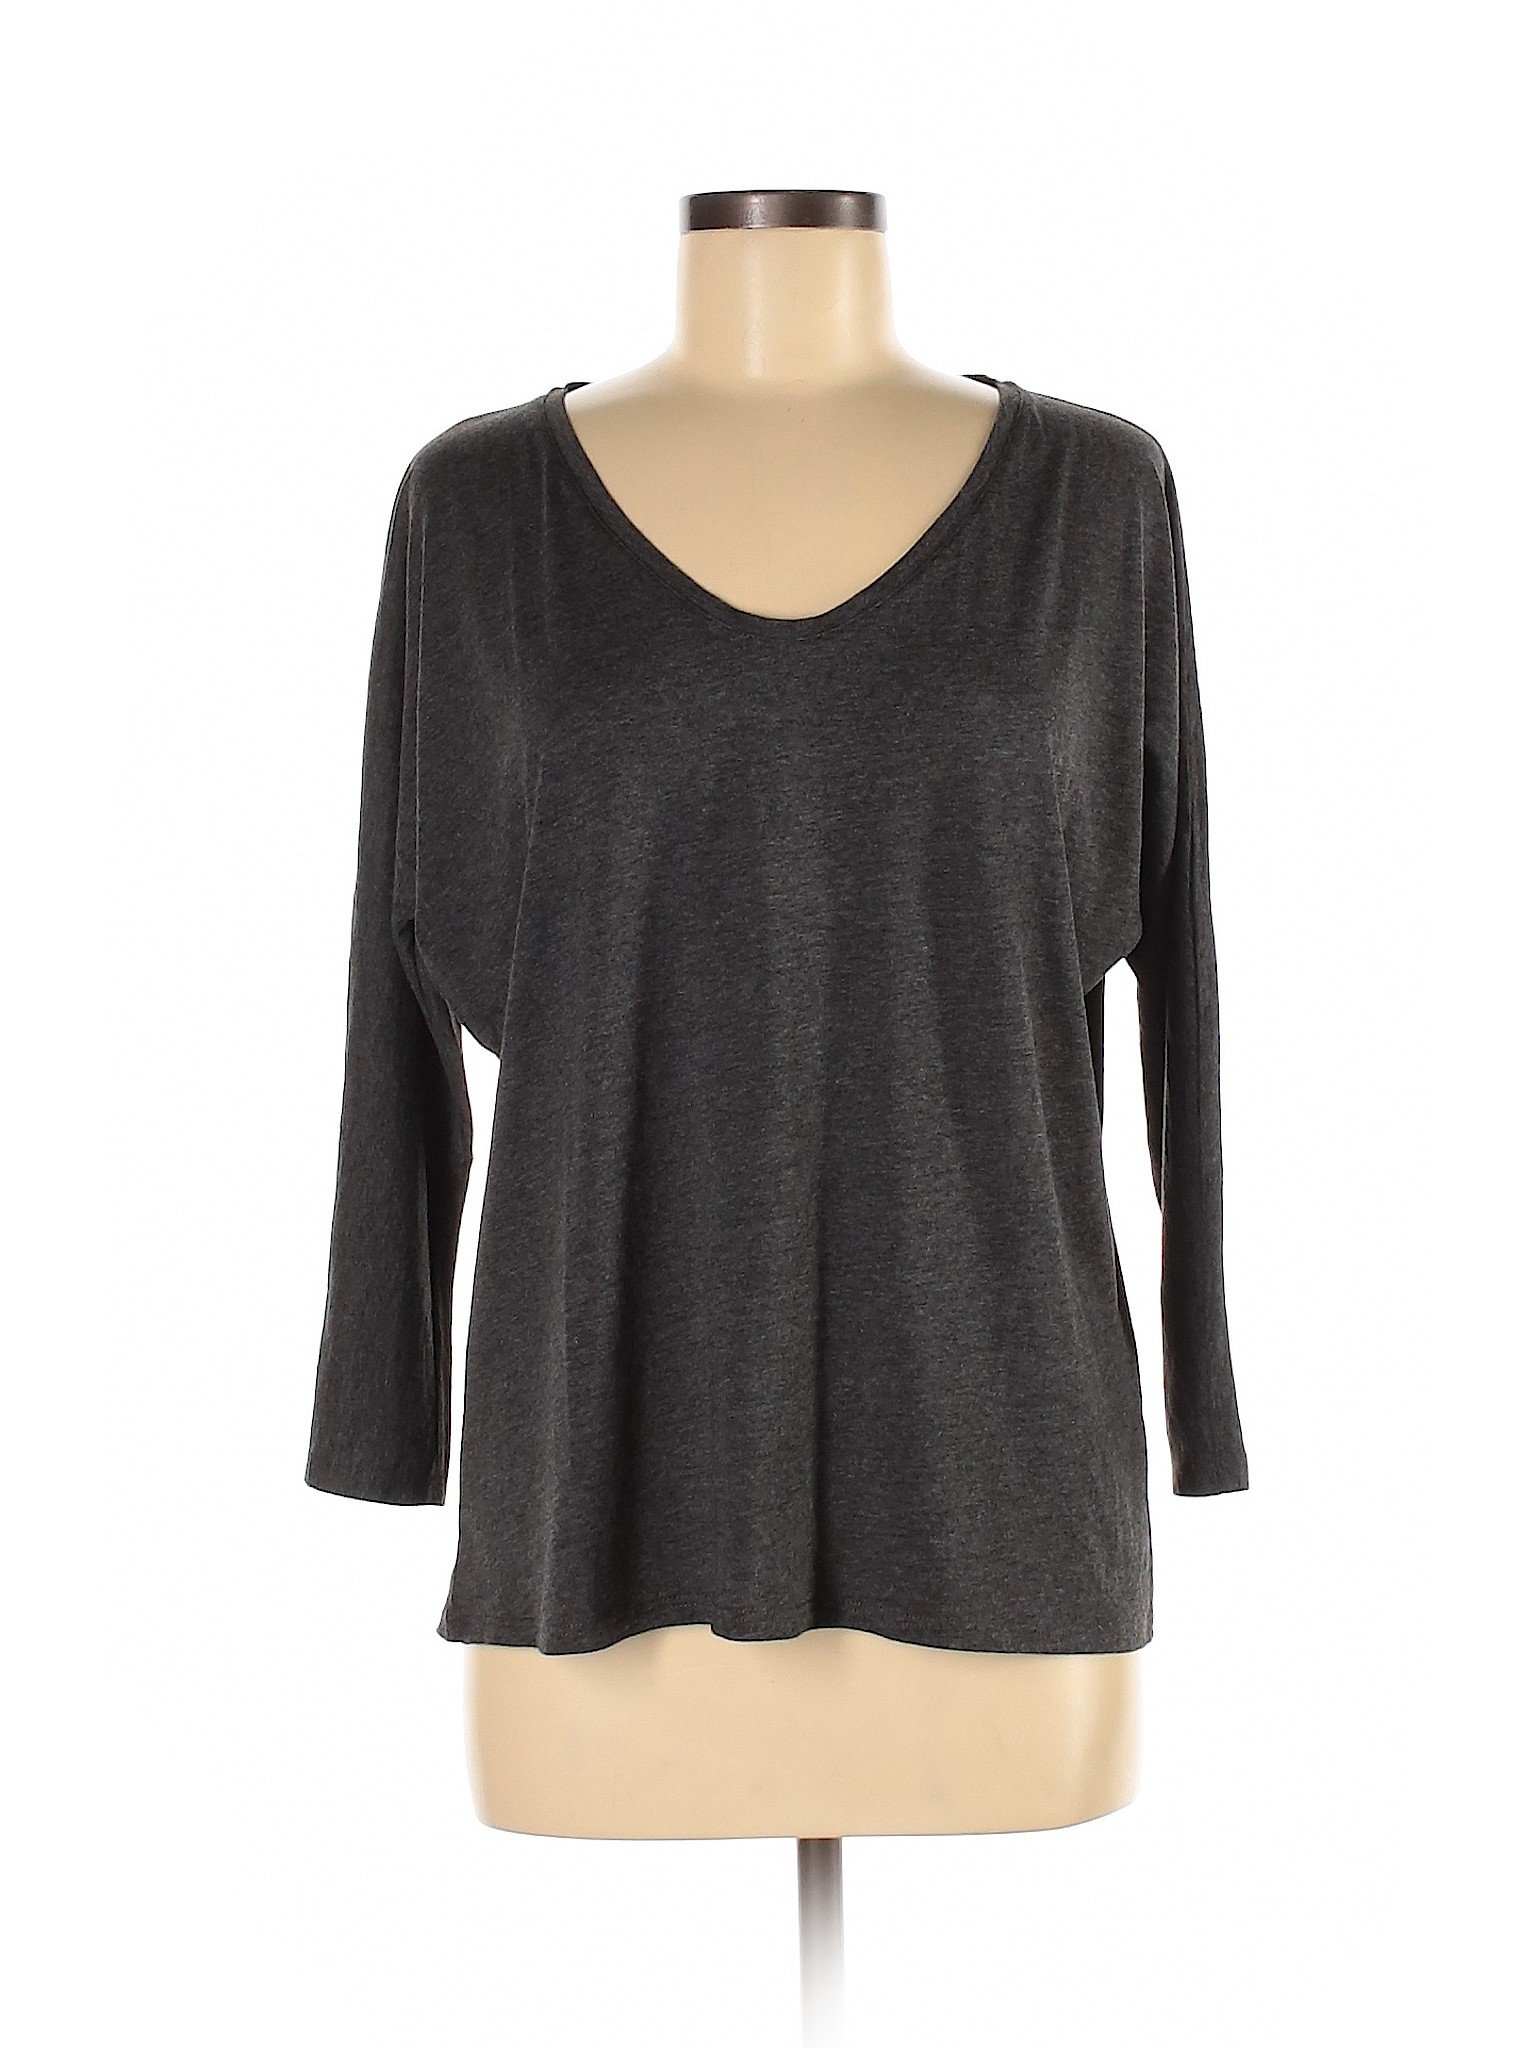 Boden Women Gray Long Sleeve T-Shirt M | eBay